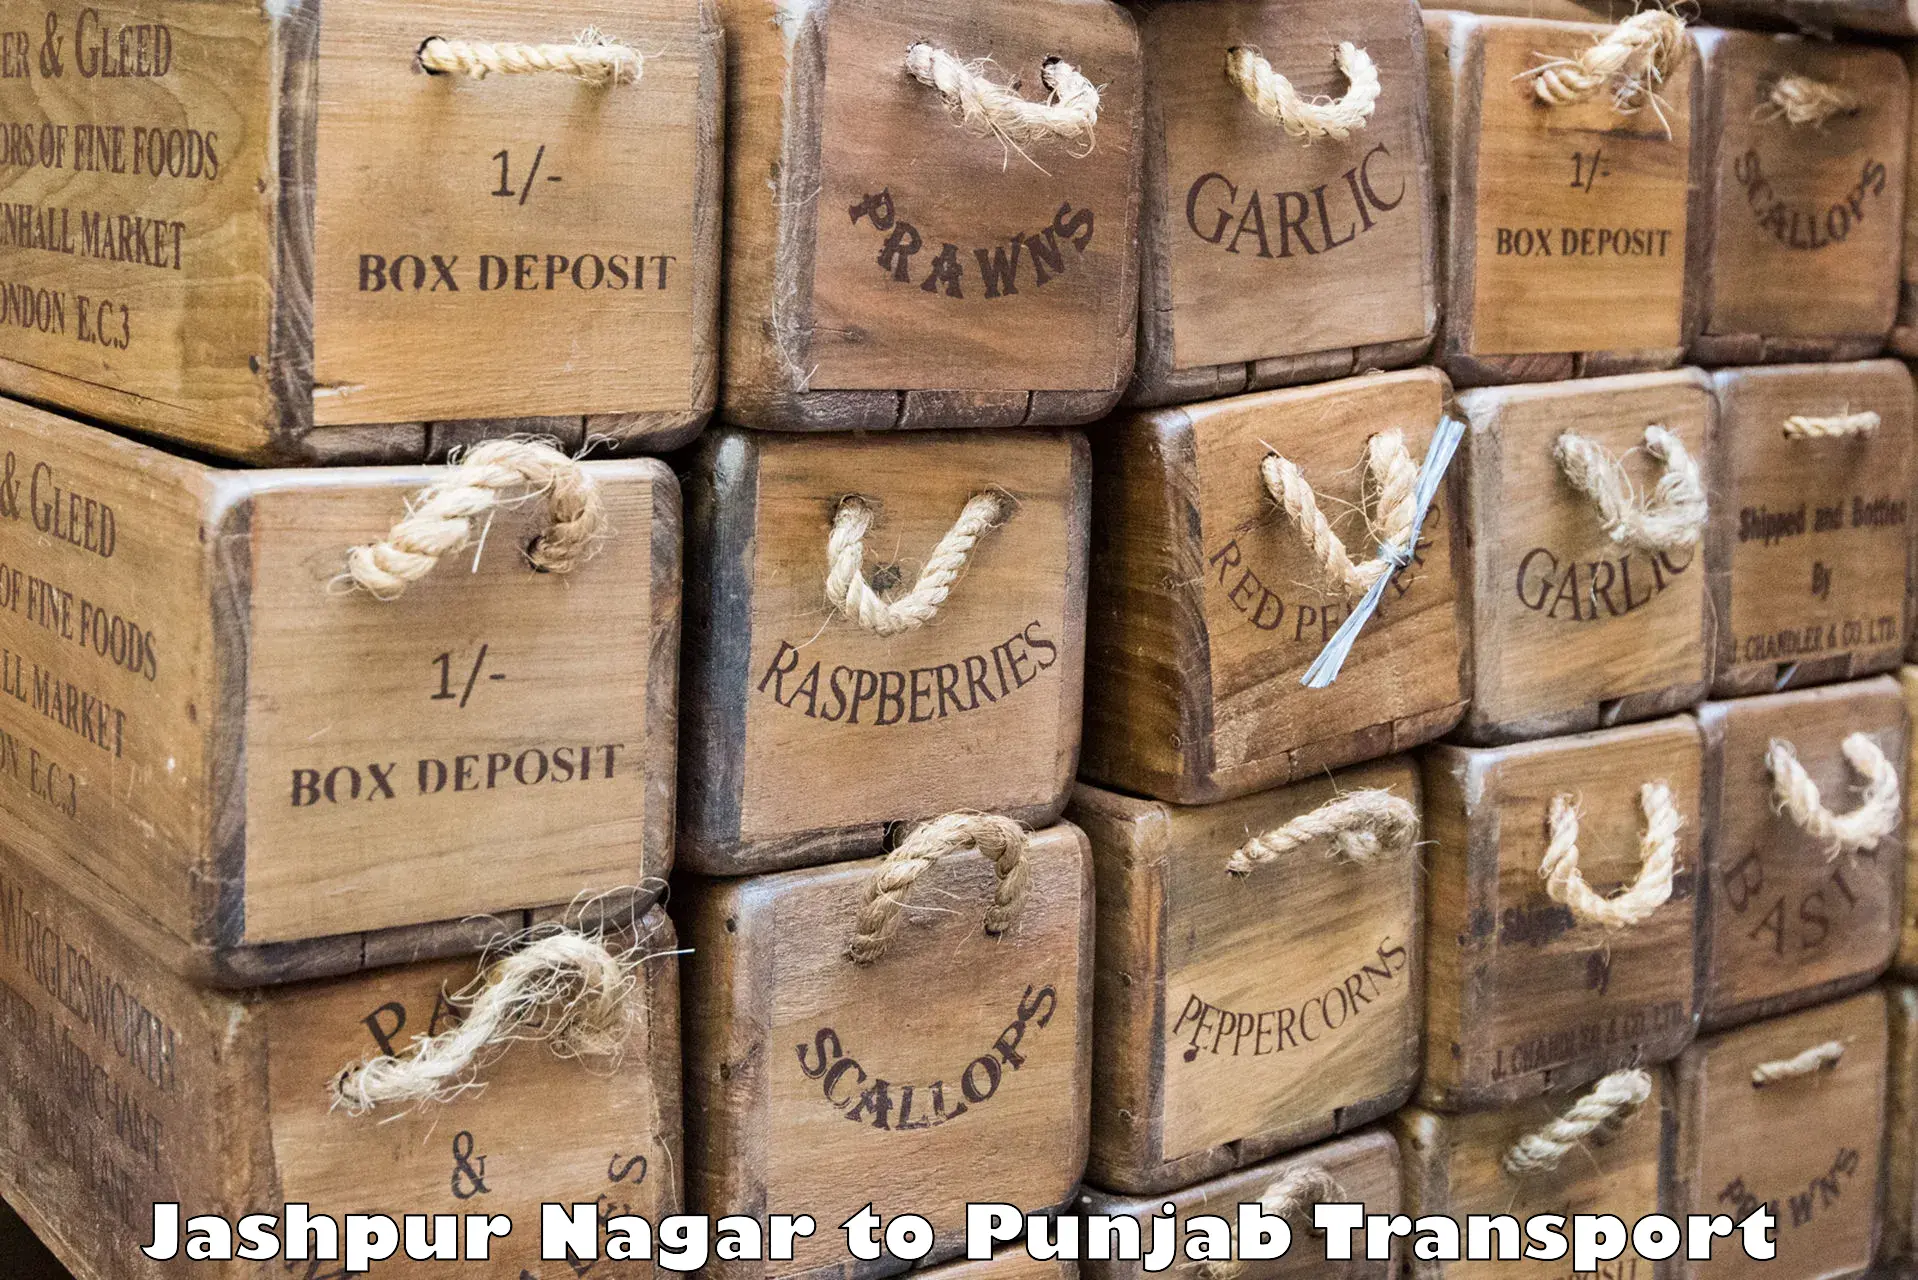 Air freight transport services Jashpur Nagar to Samana